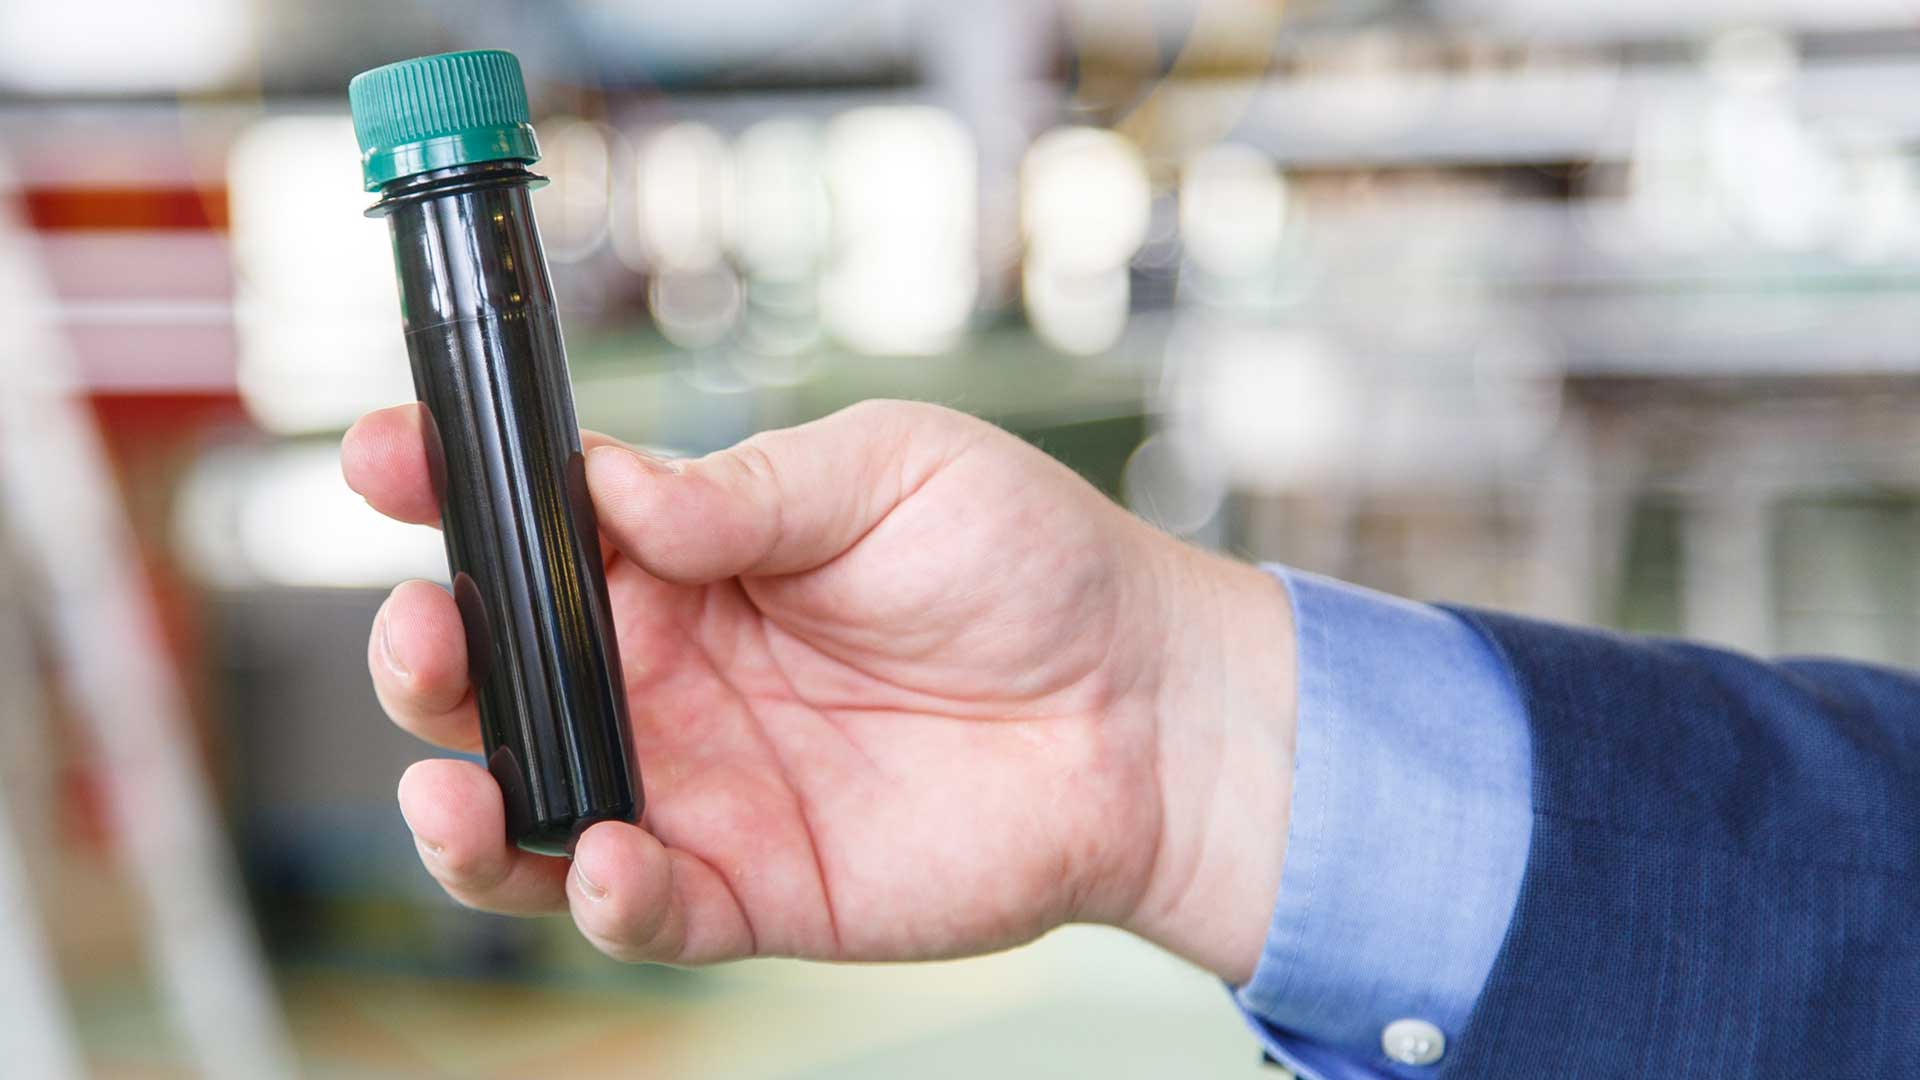 Pivovar Starobrno pomáhá nemocnici. Preformy PET lahví jsou vhodné pro odběry vzorků potenciálních pacientů s COVID-19